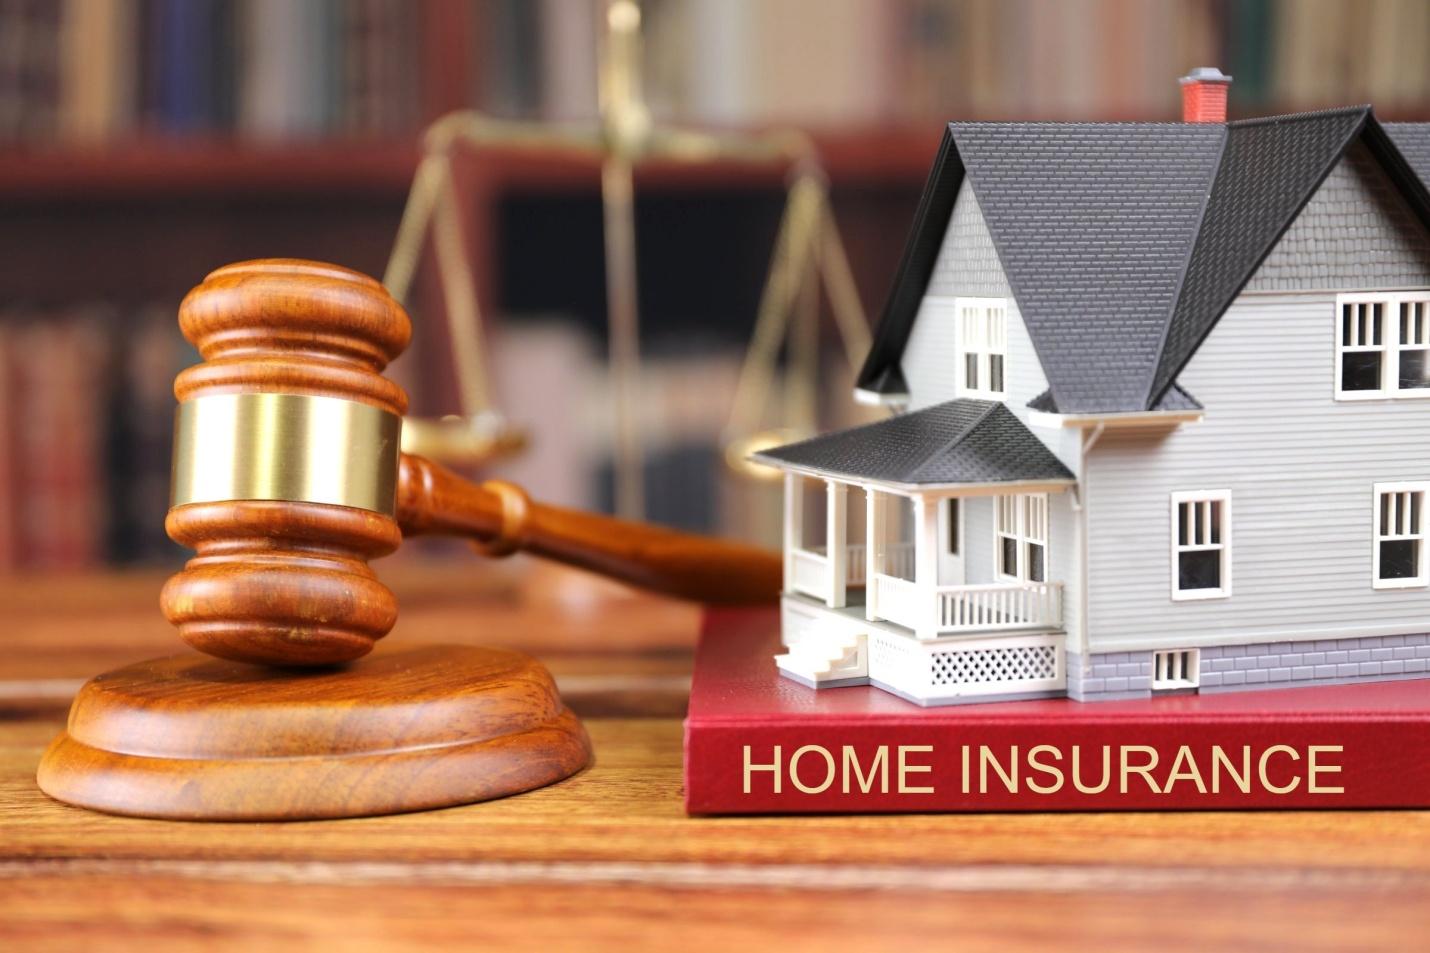 Home insurance model